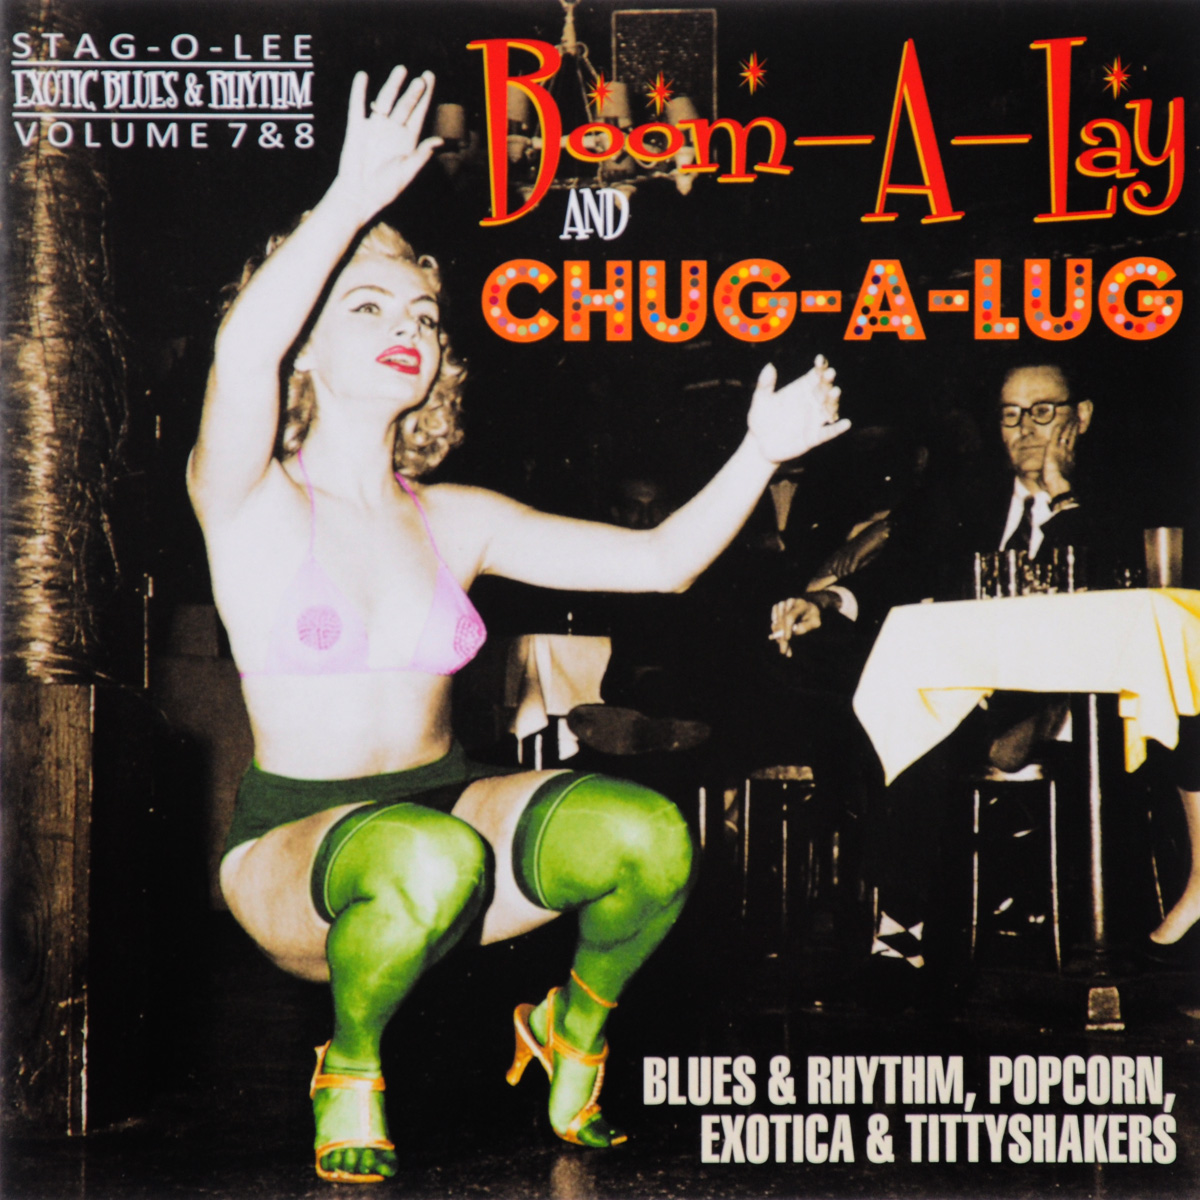 Exotic Blues & Rhythm. Volume 7 & 8. Boom-A-Lay. Chug-A-Lug